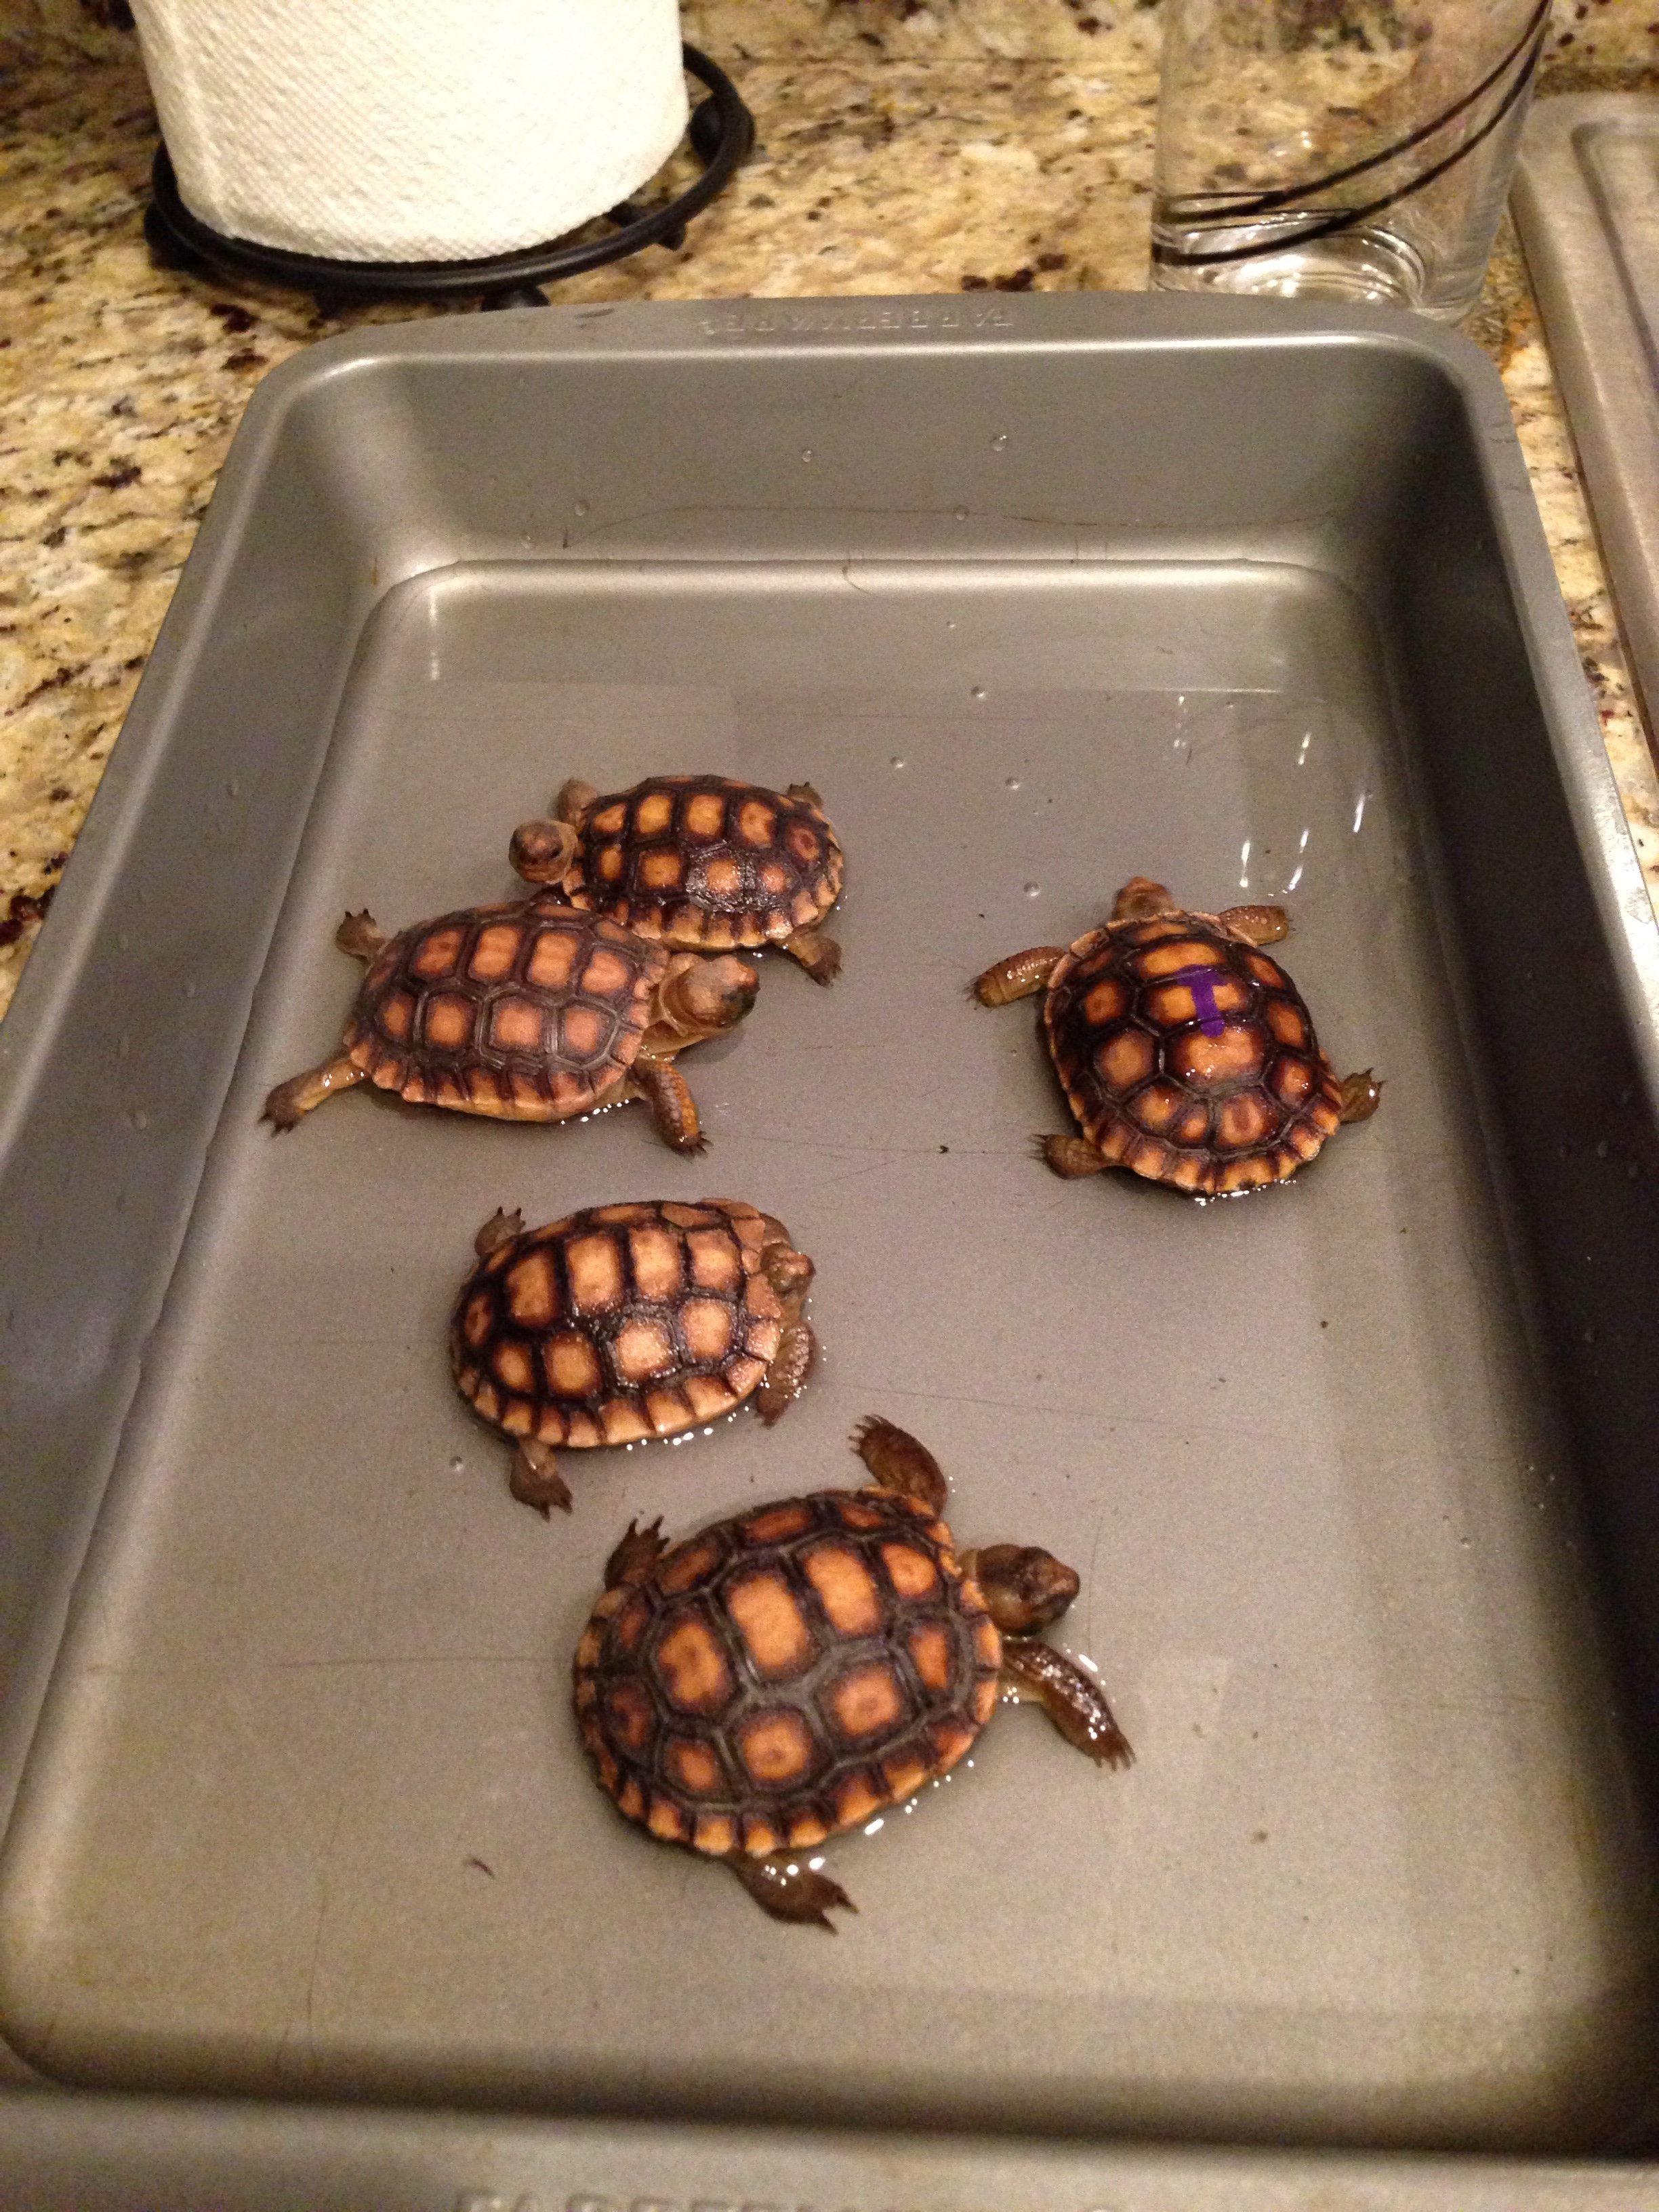 Tortoise soak party!